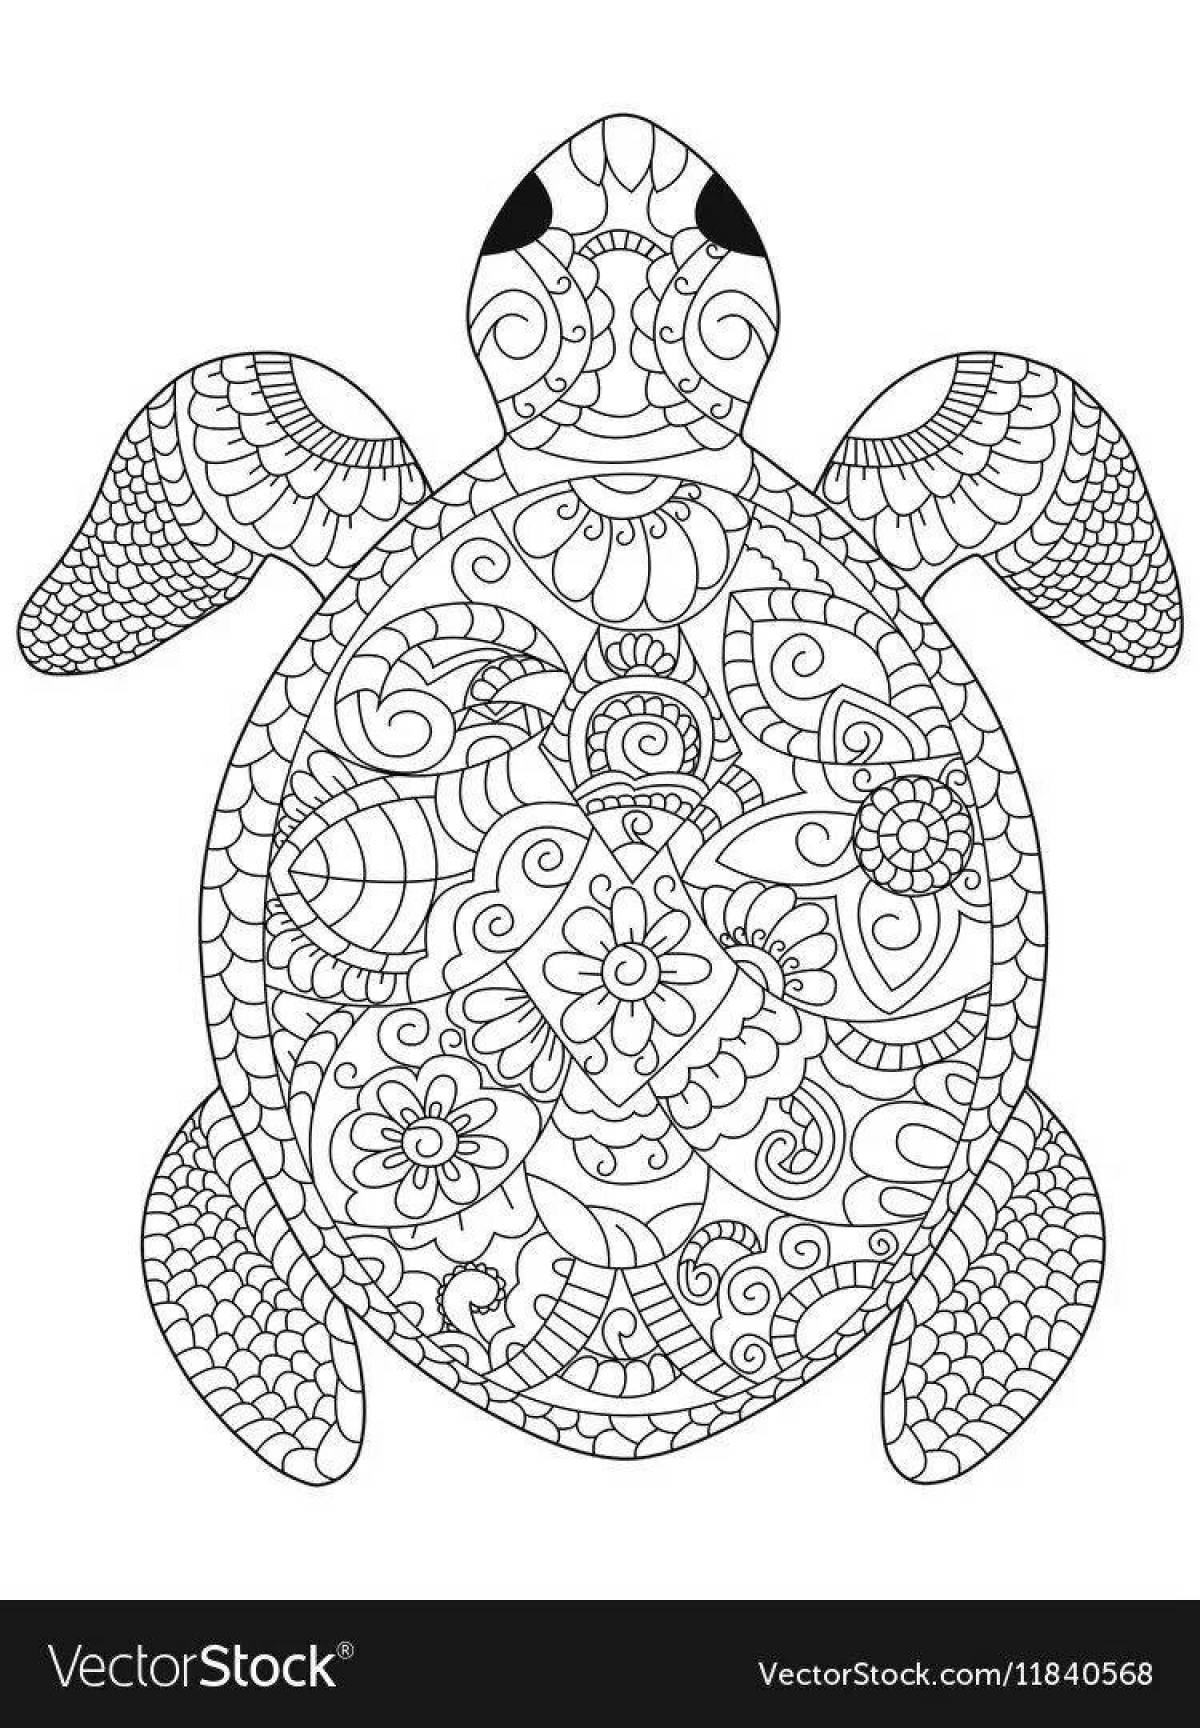 Очаровательная антистрессовая черепаха-раскраска